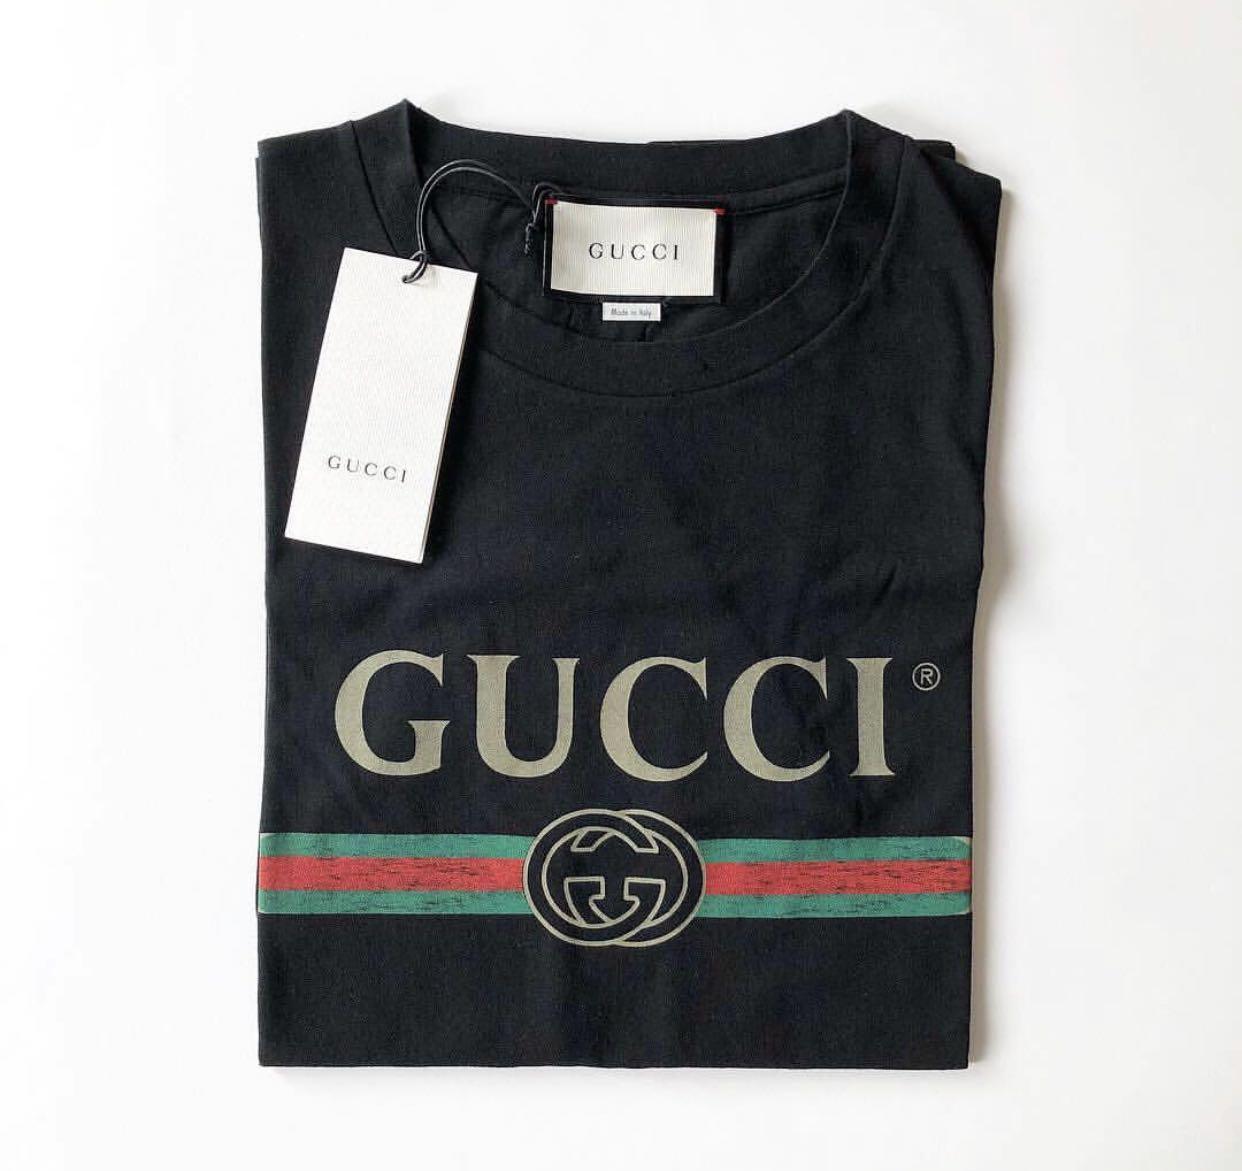 gucci tshirt on sale